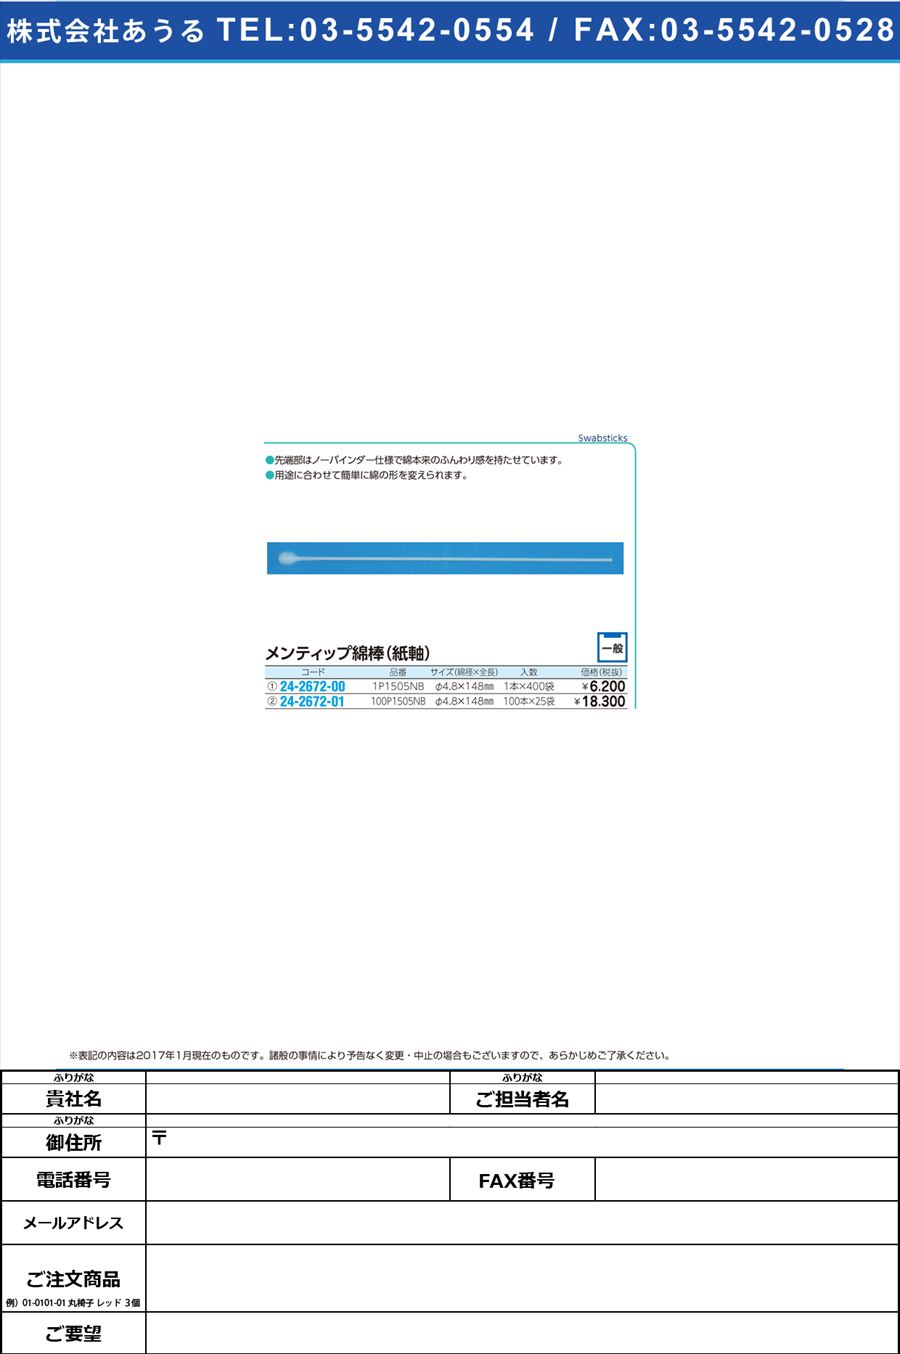 メンティップ綿棒 ﾒﾝﾃｨｯﾌﾟﾒﾝﾎﾞｳ 100P1505NB(100X25ｲﾘ)(24-2672-01)【1箱単位】【2017年カタログ商品】